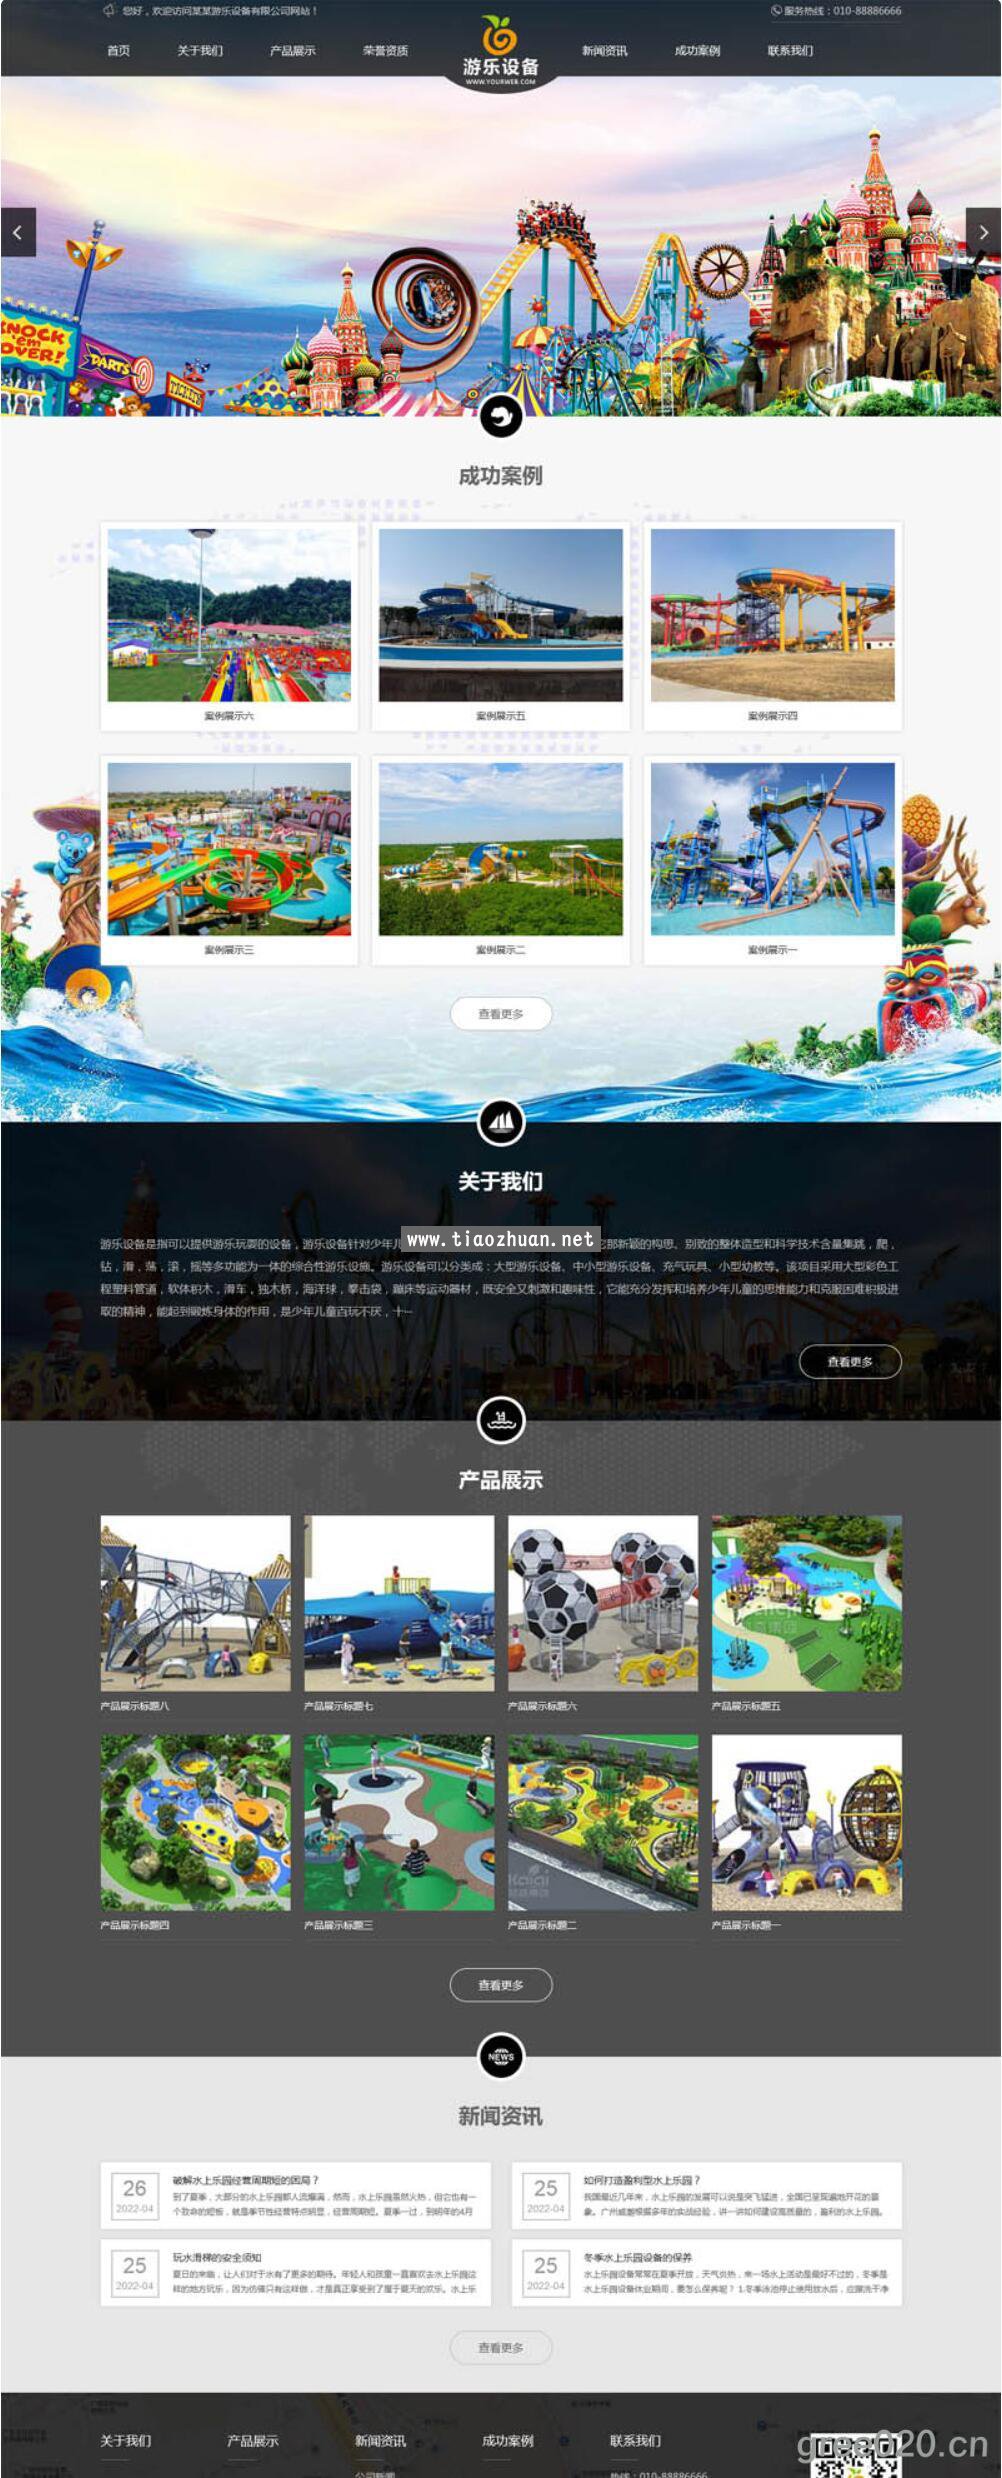 水上游乐园设备网站模板,娱乐设备设施网站源码下载